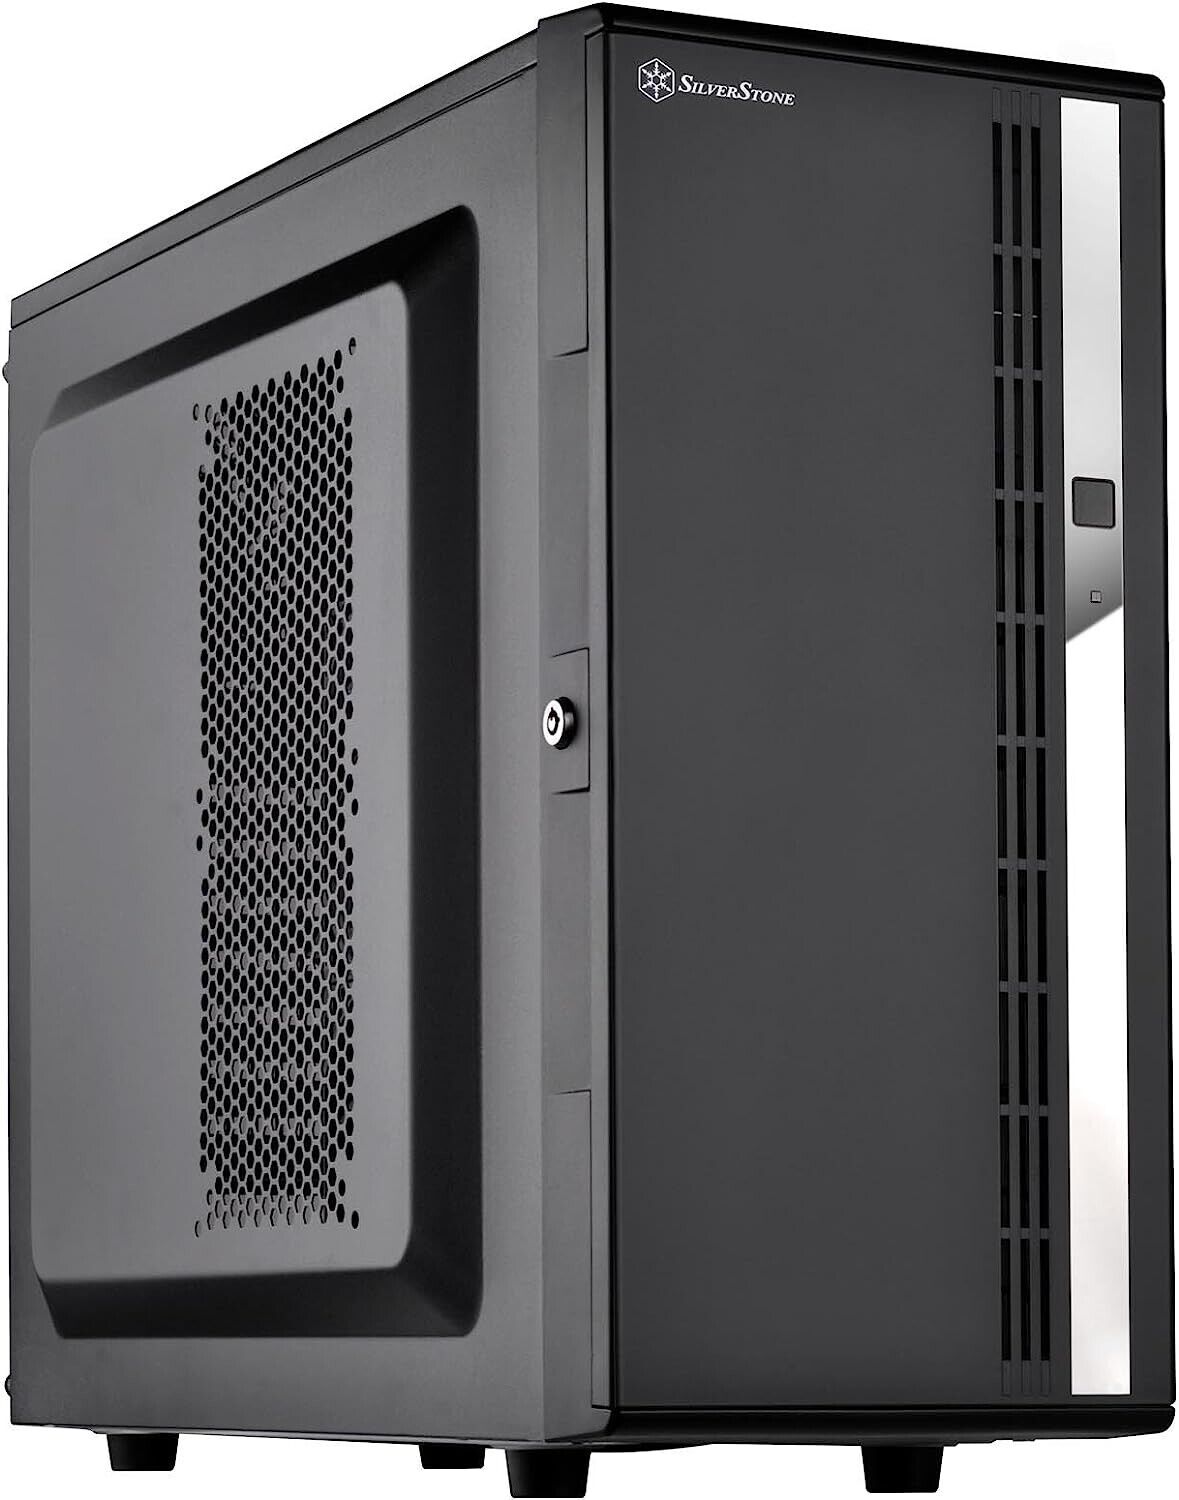 SilverStone Technology CS380 8-Bay Compact ATX Tower case, CS380B-X V2.0, Black